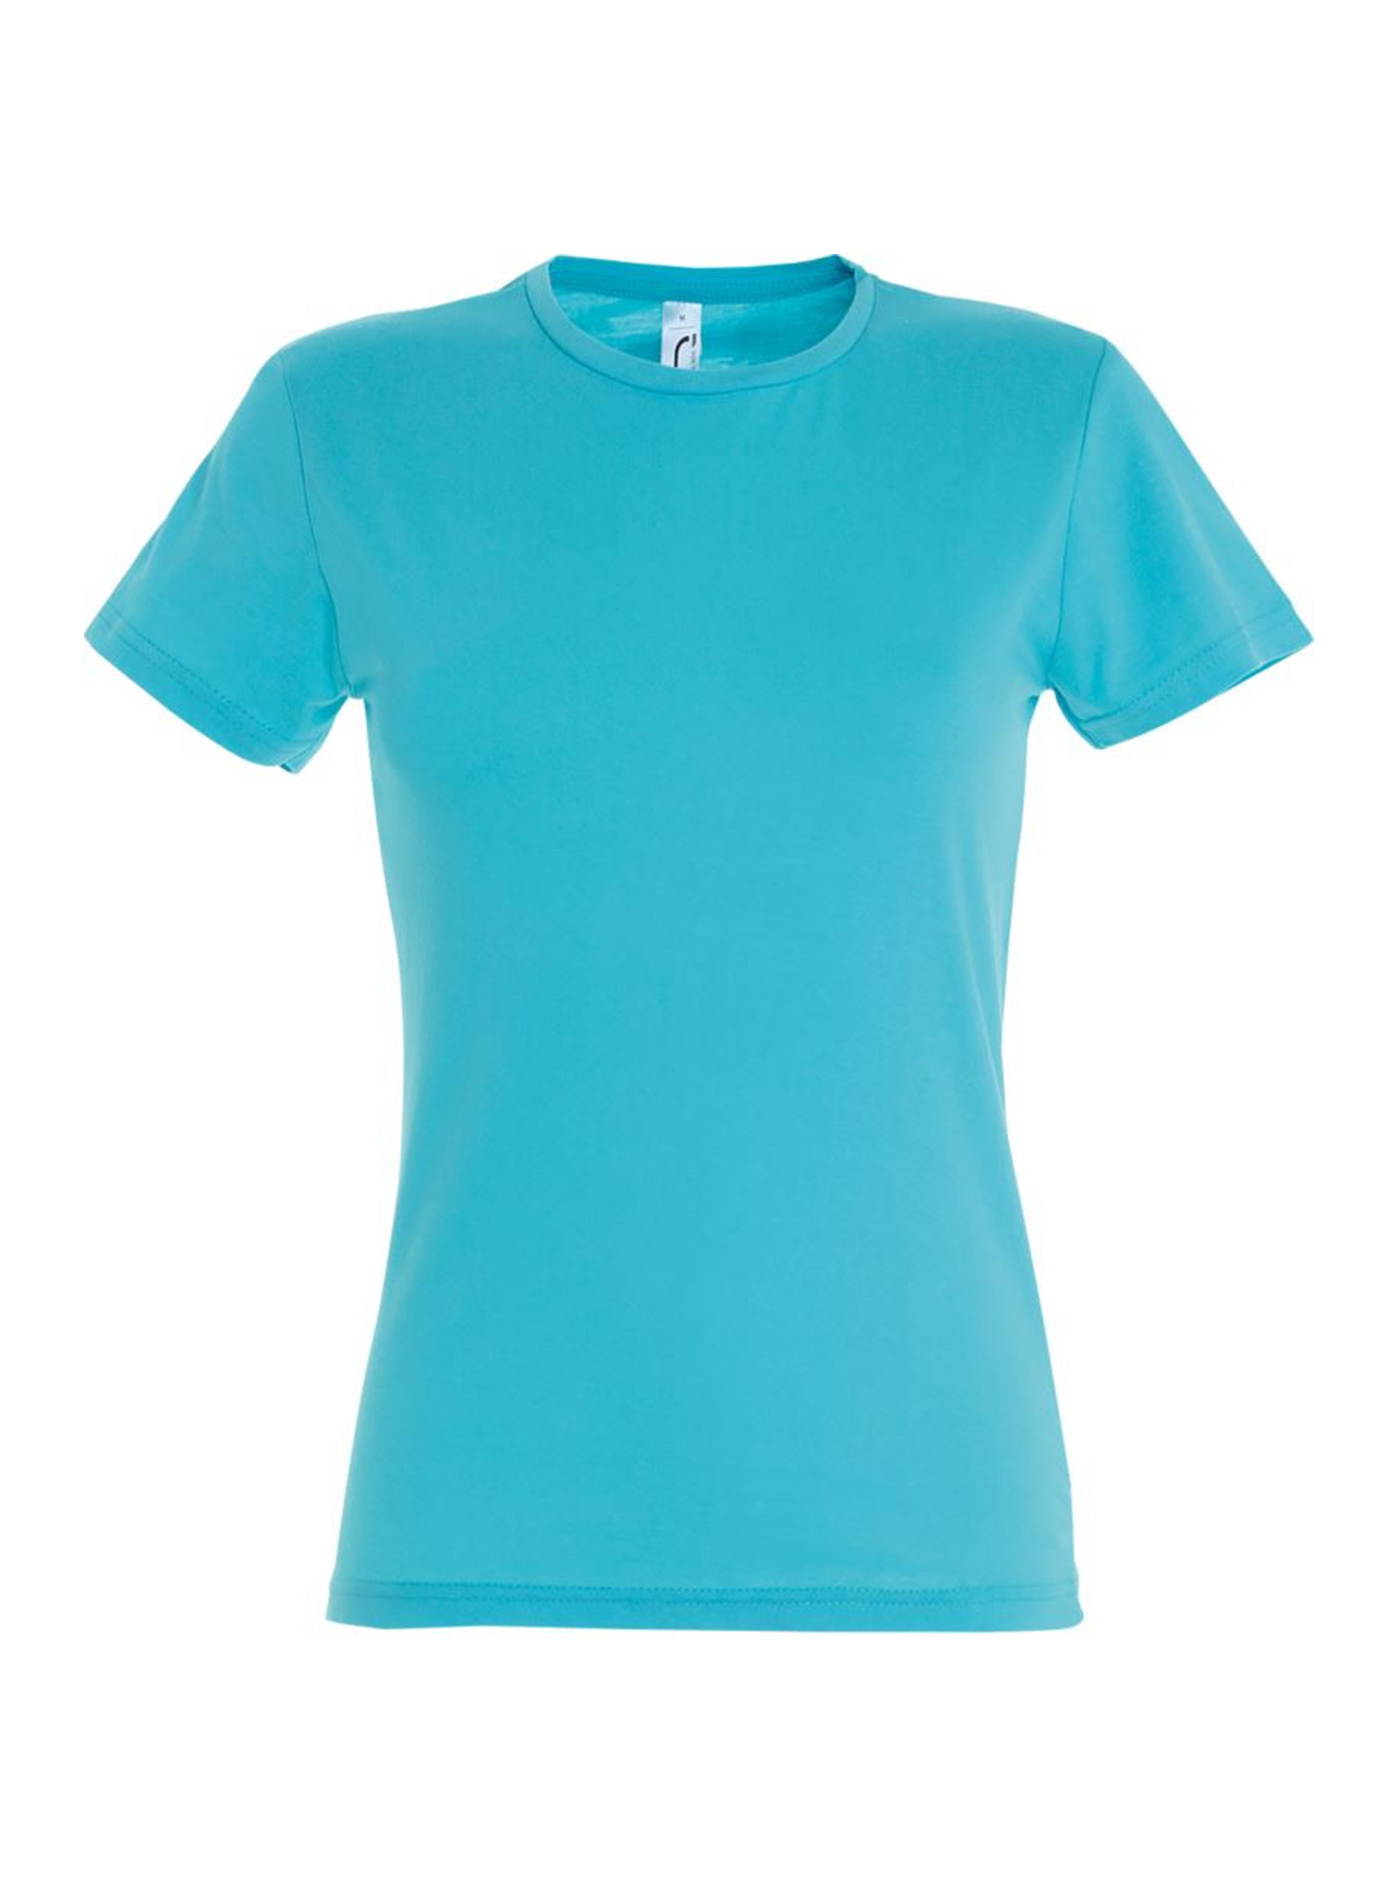 Dámské tričko SOL'S Miss - Azurově modrá žíhaná XL